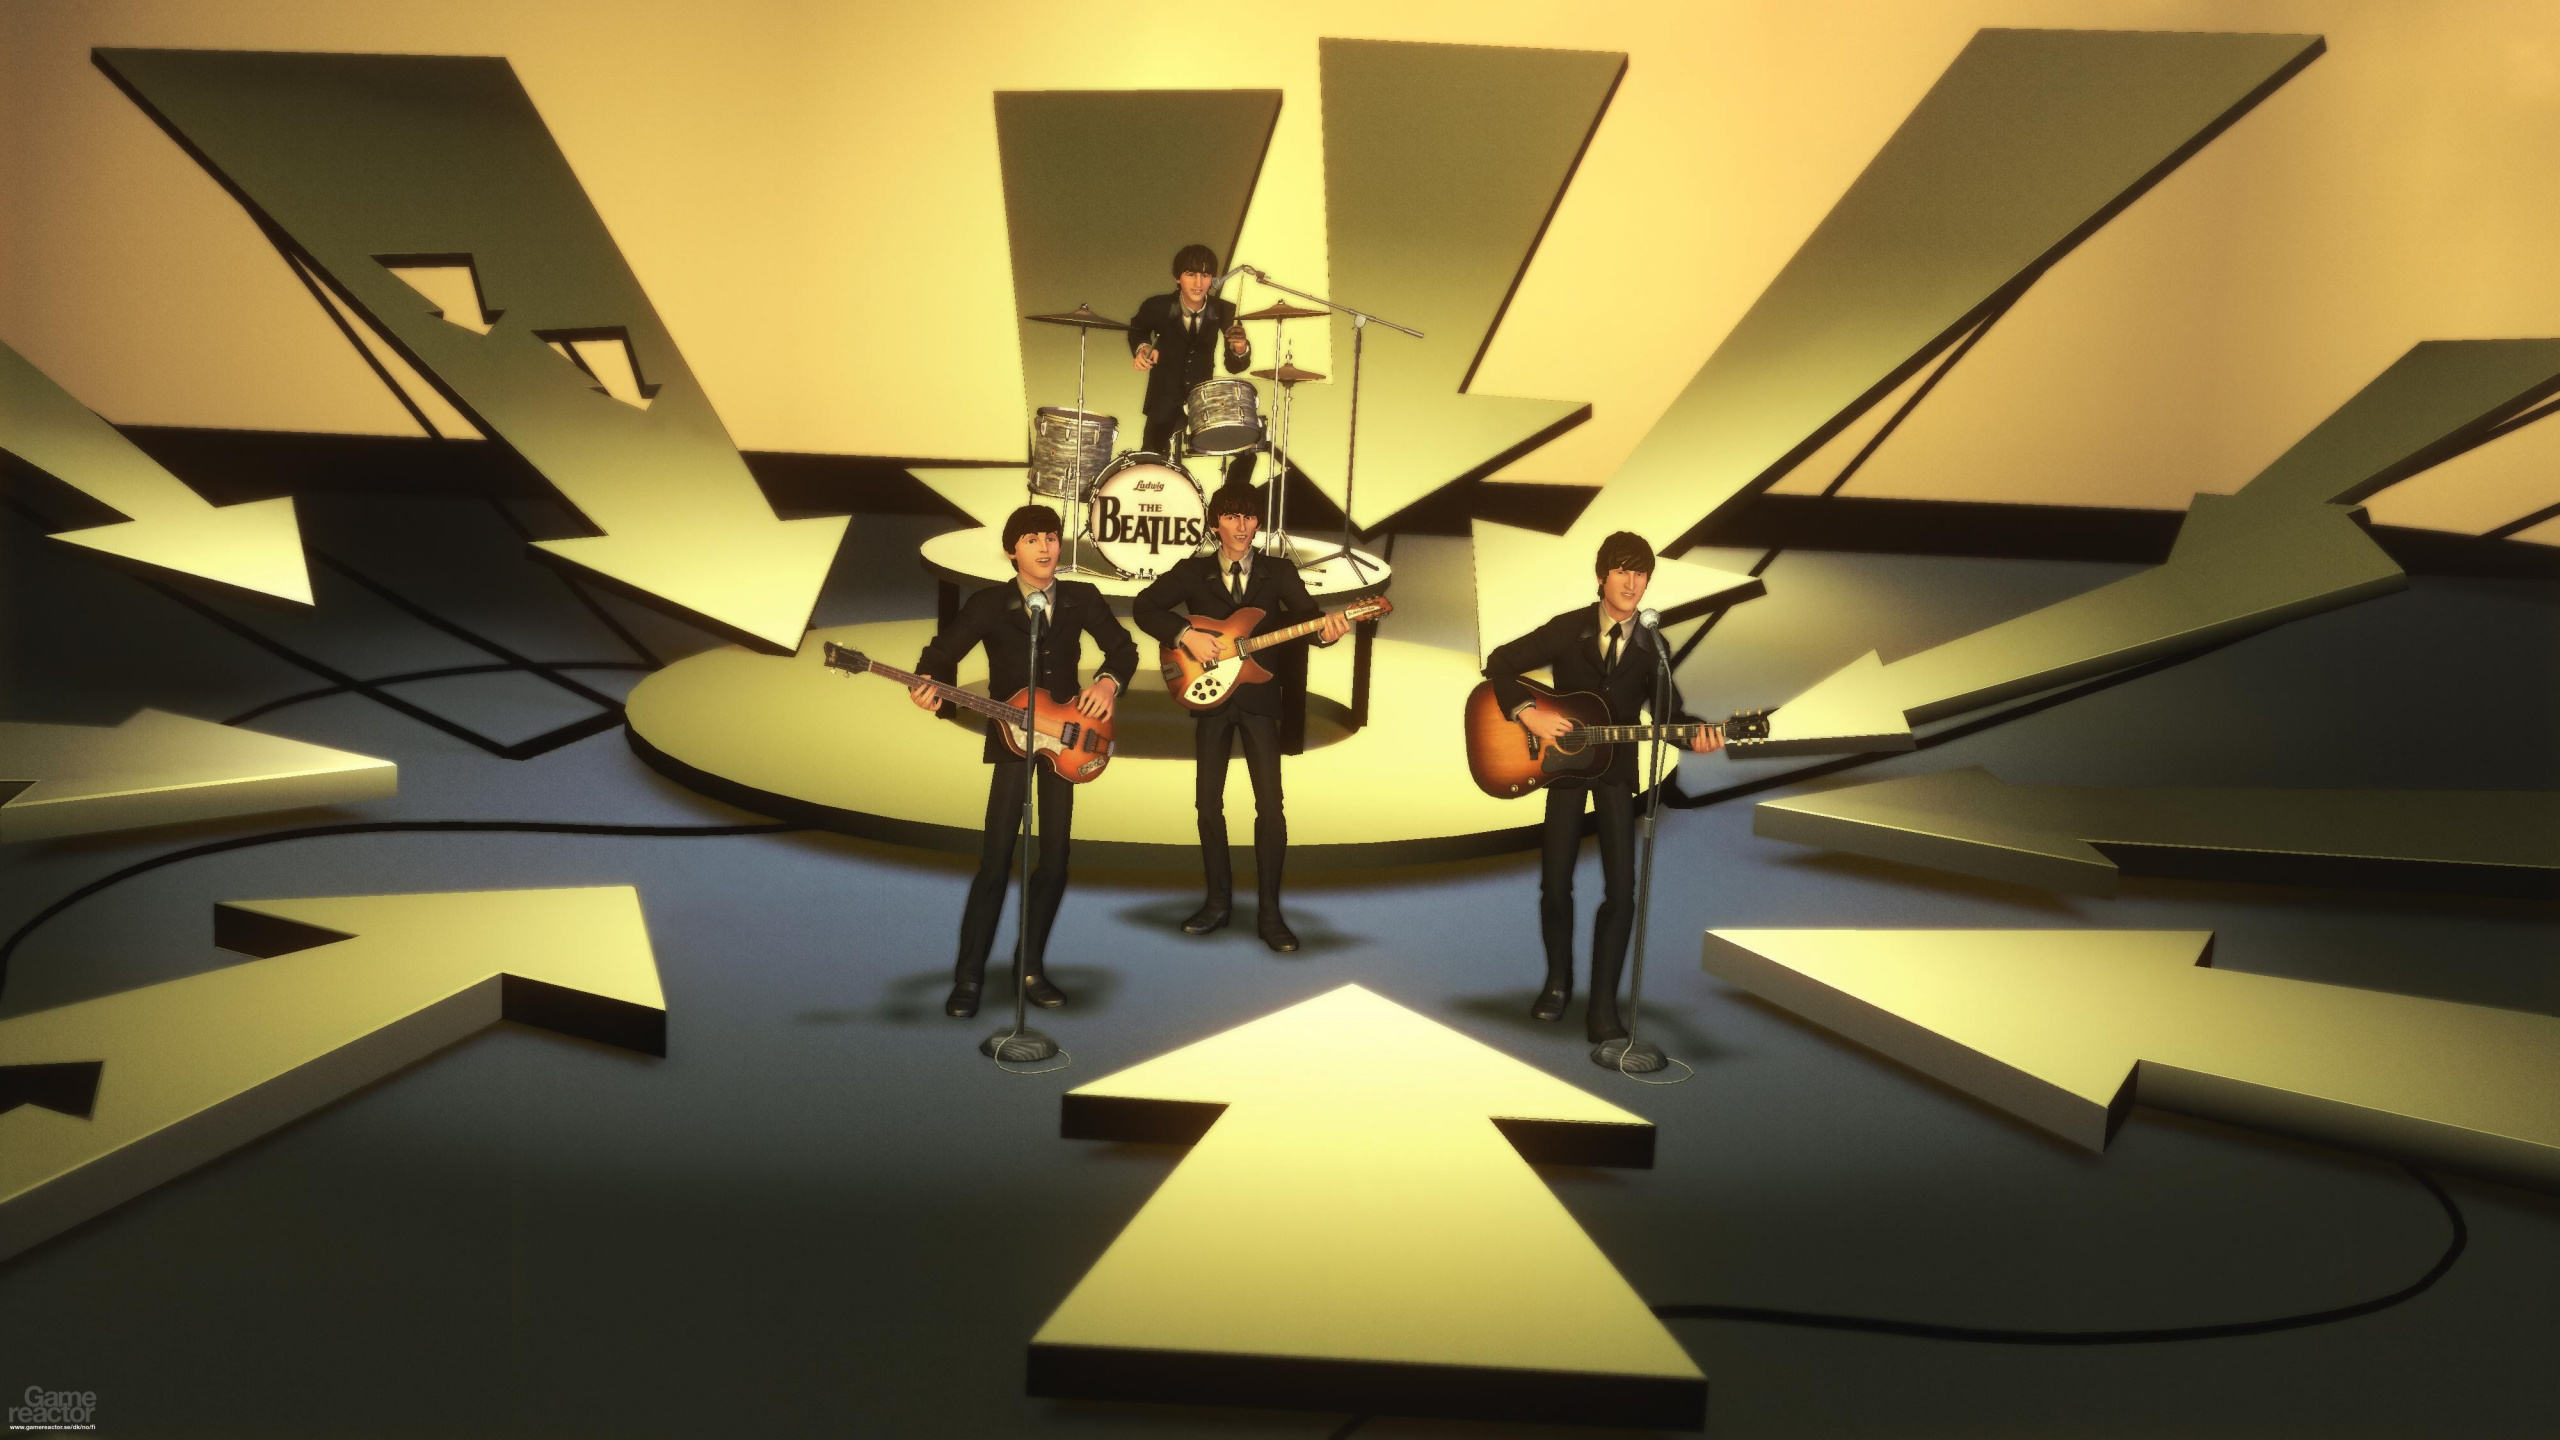 The Beatles Rock Band, Beatles, Design D'intérieur, Art, Interieur. Wallpaper in 2560x1440 Resolution